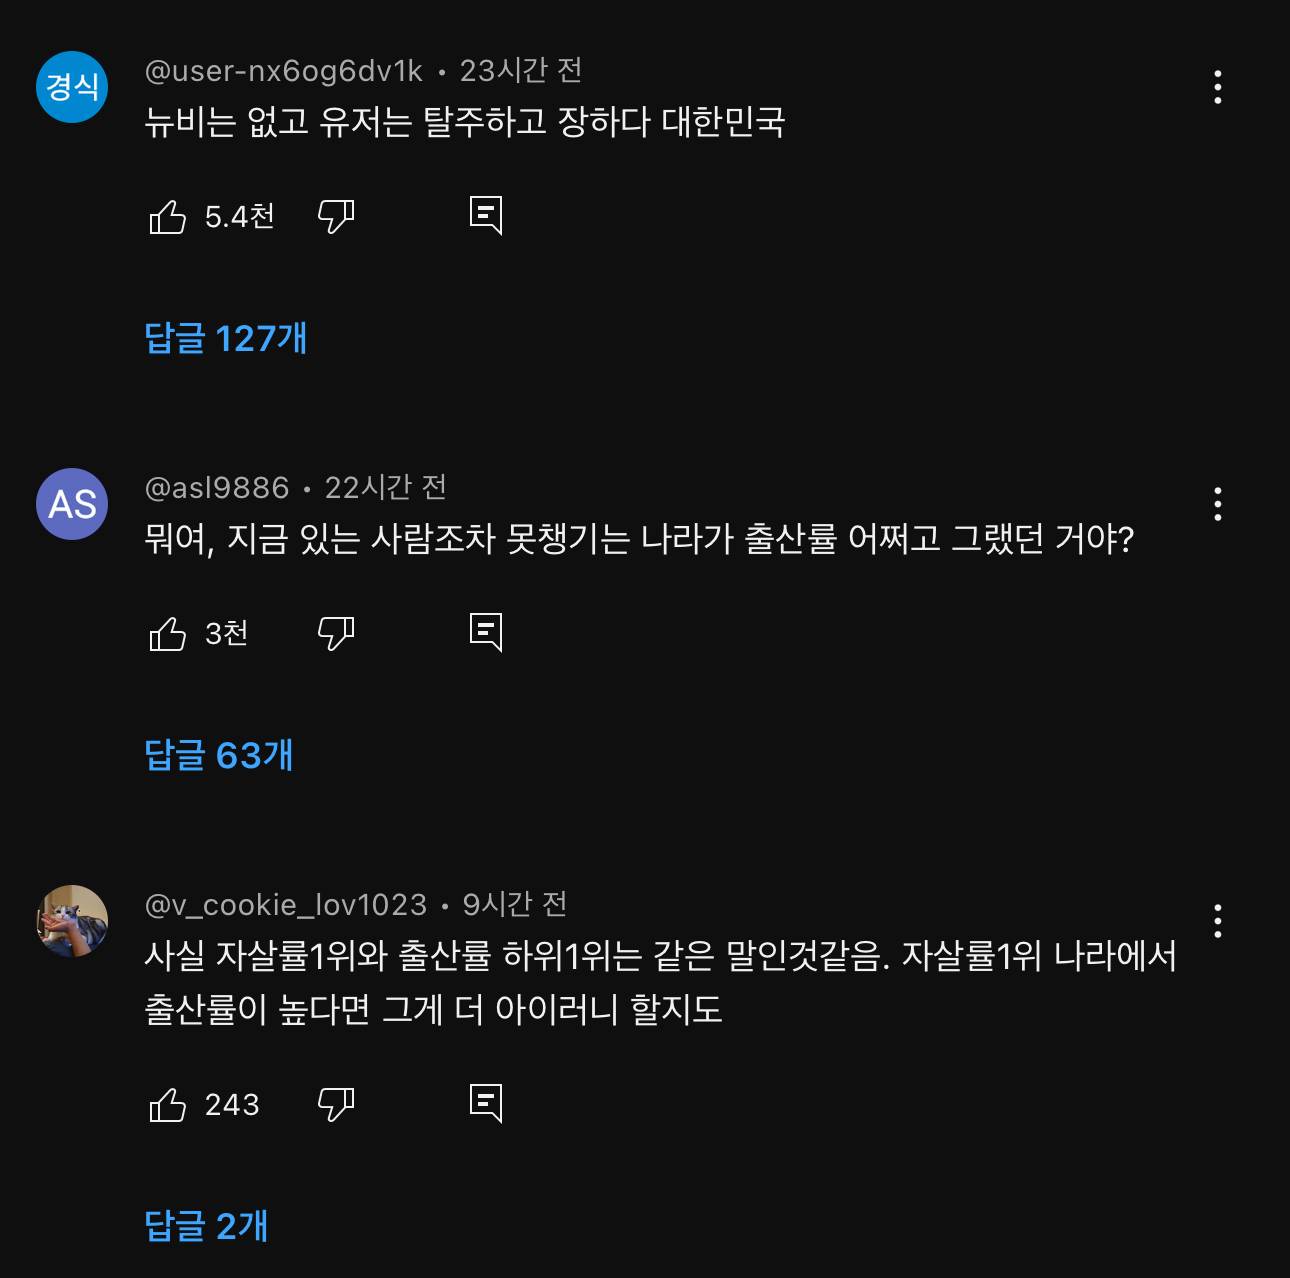 슈카월드 최신영상 "출산율은 꼴찌, 자살율은 1위” 댓글 | 인스티즈